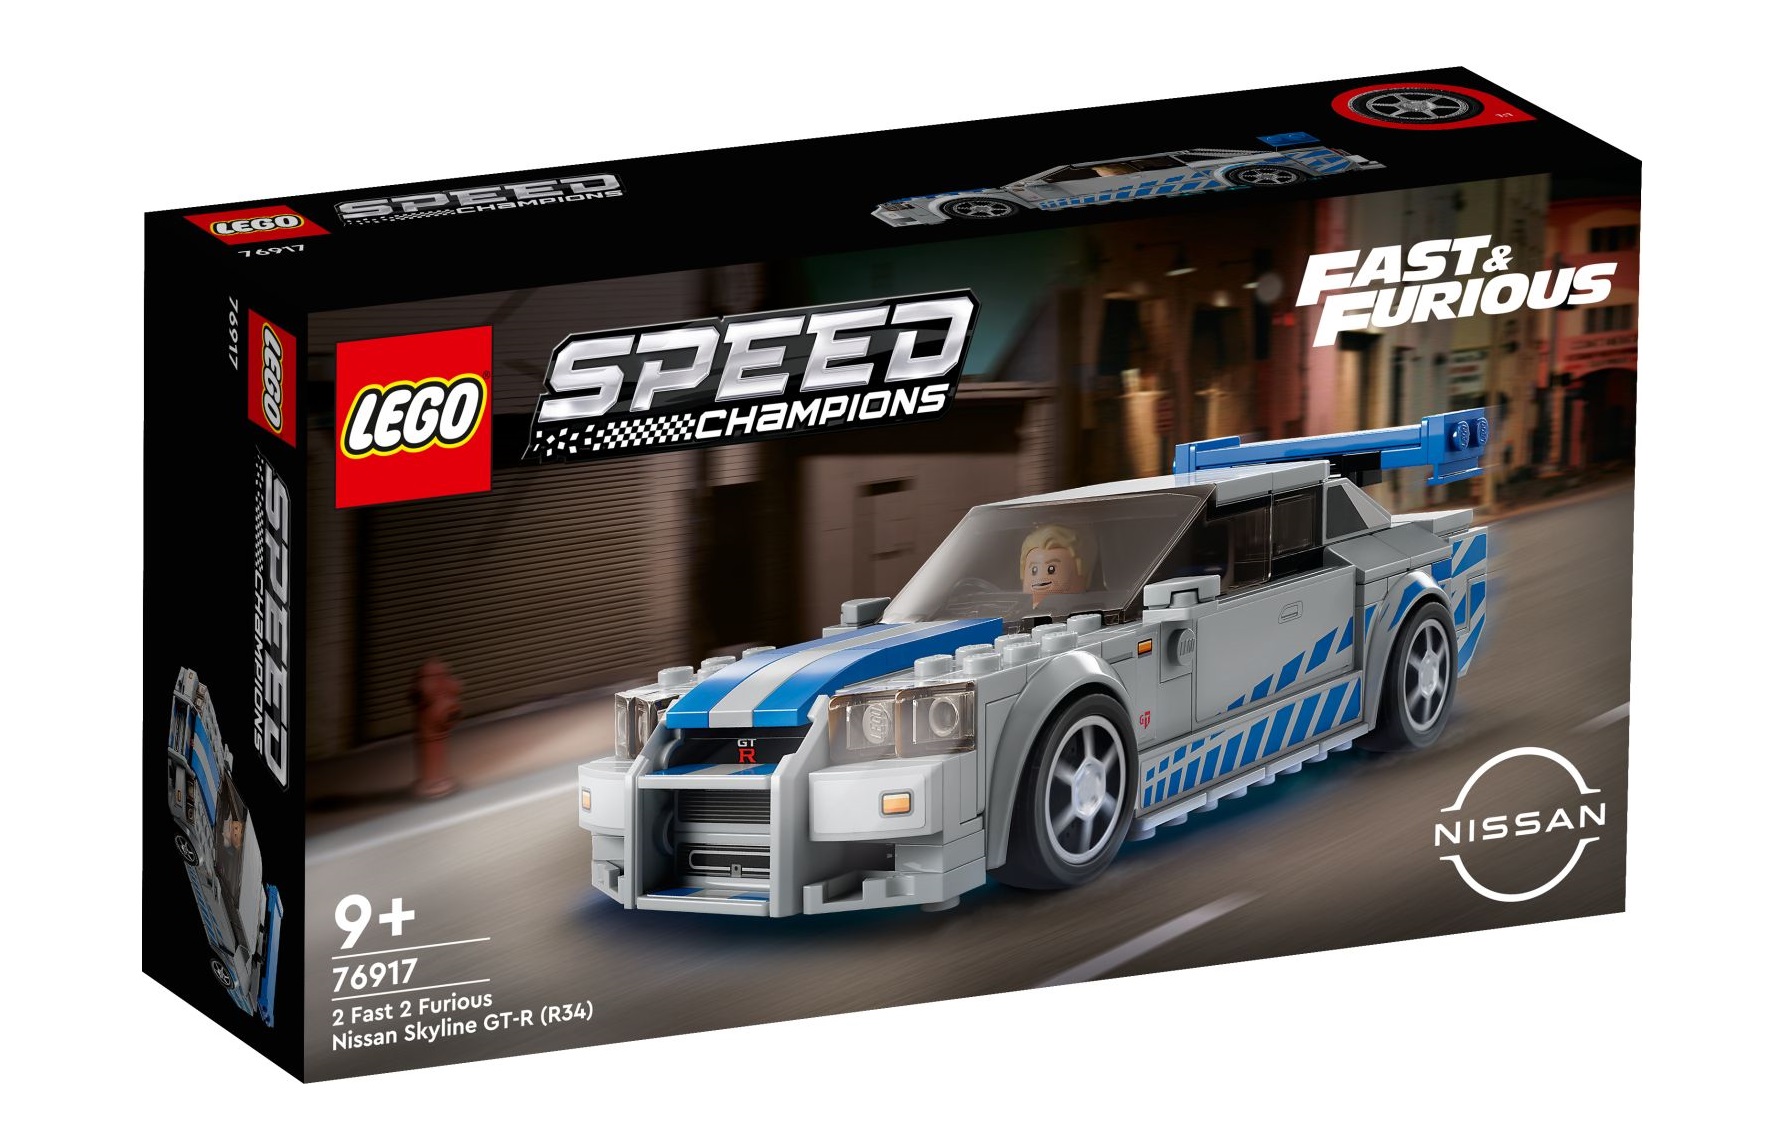 LEGO 2 Fast 2 Furious Nissan Skyline GT-R R34 set